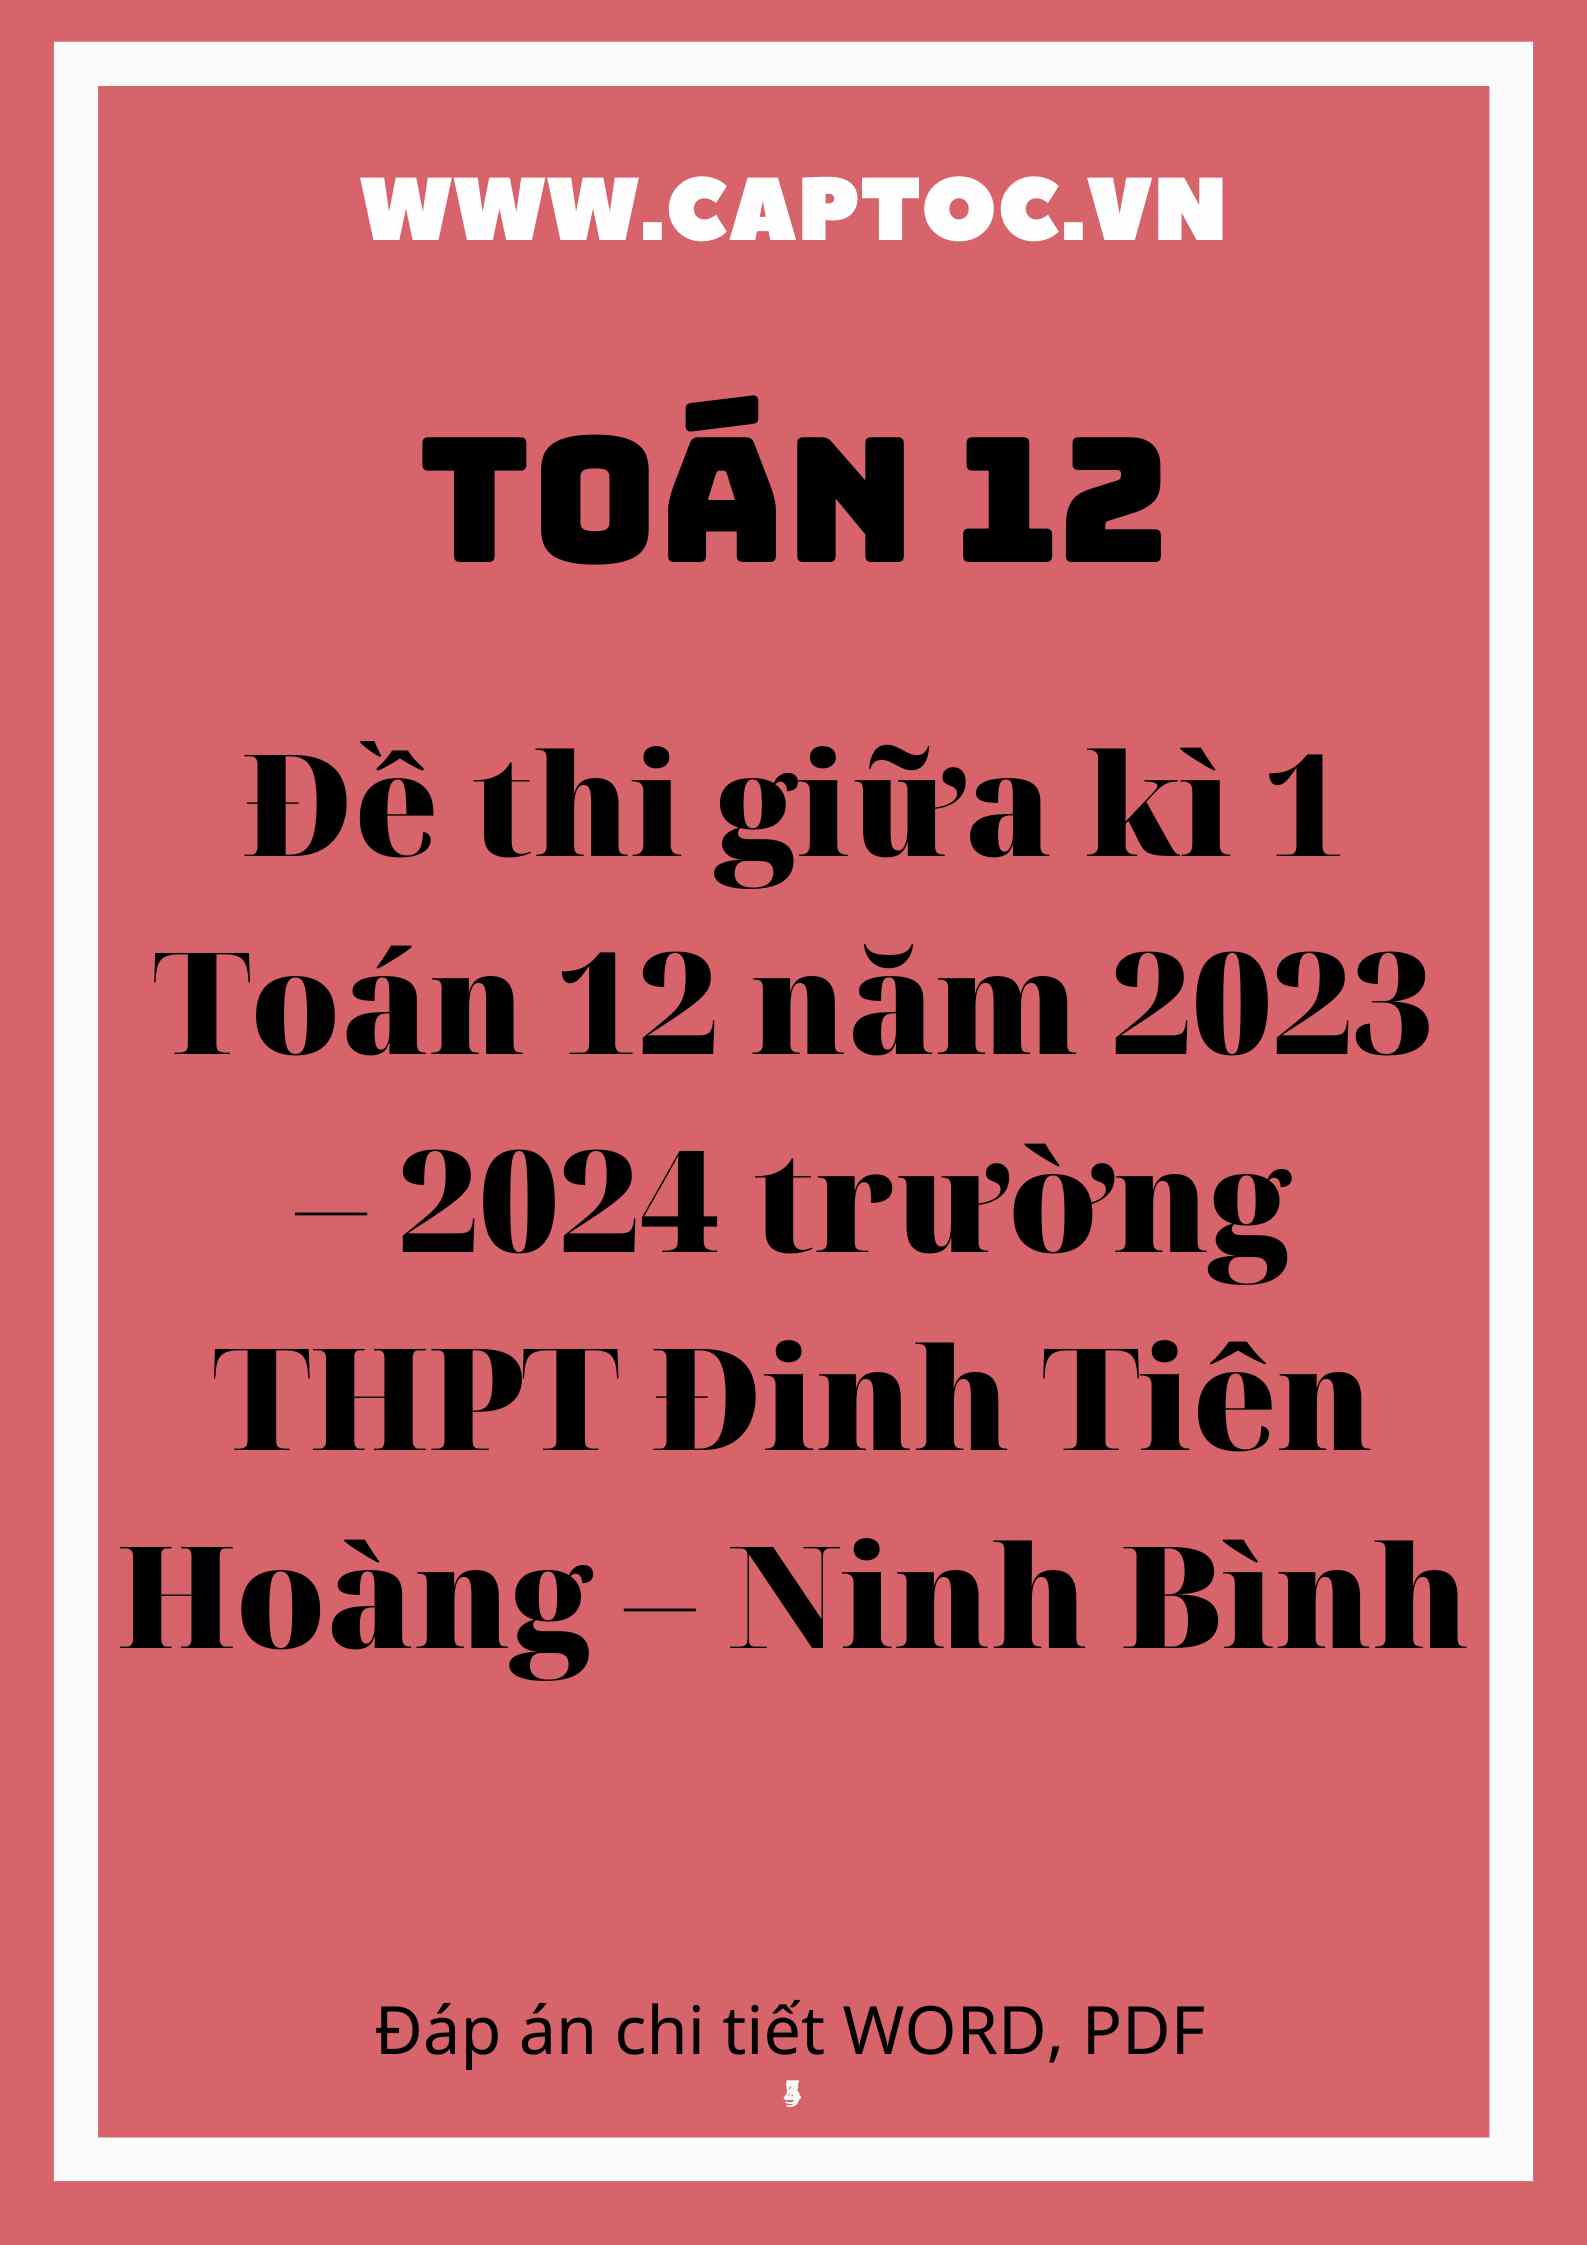 Đề thi giữa kì 1 Toán 12 năm 2023 – 2024 trường THPT Đinh Tiên Hoàng – Ninh Bình